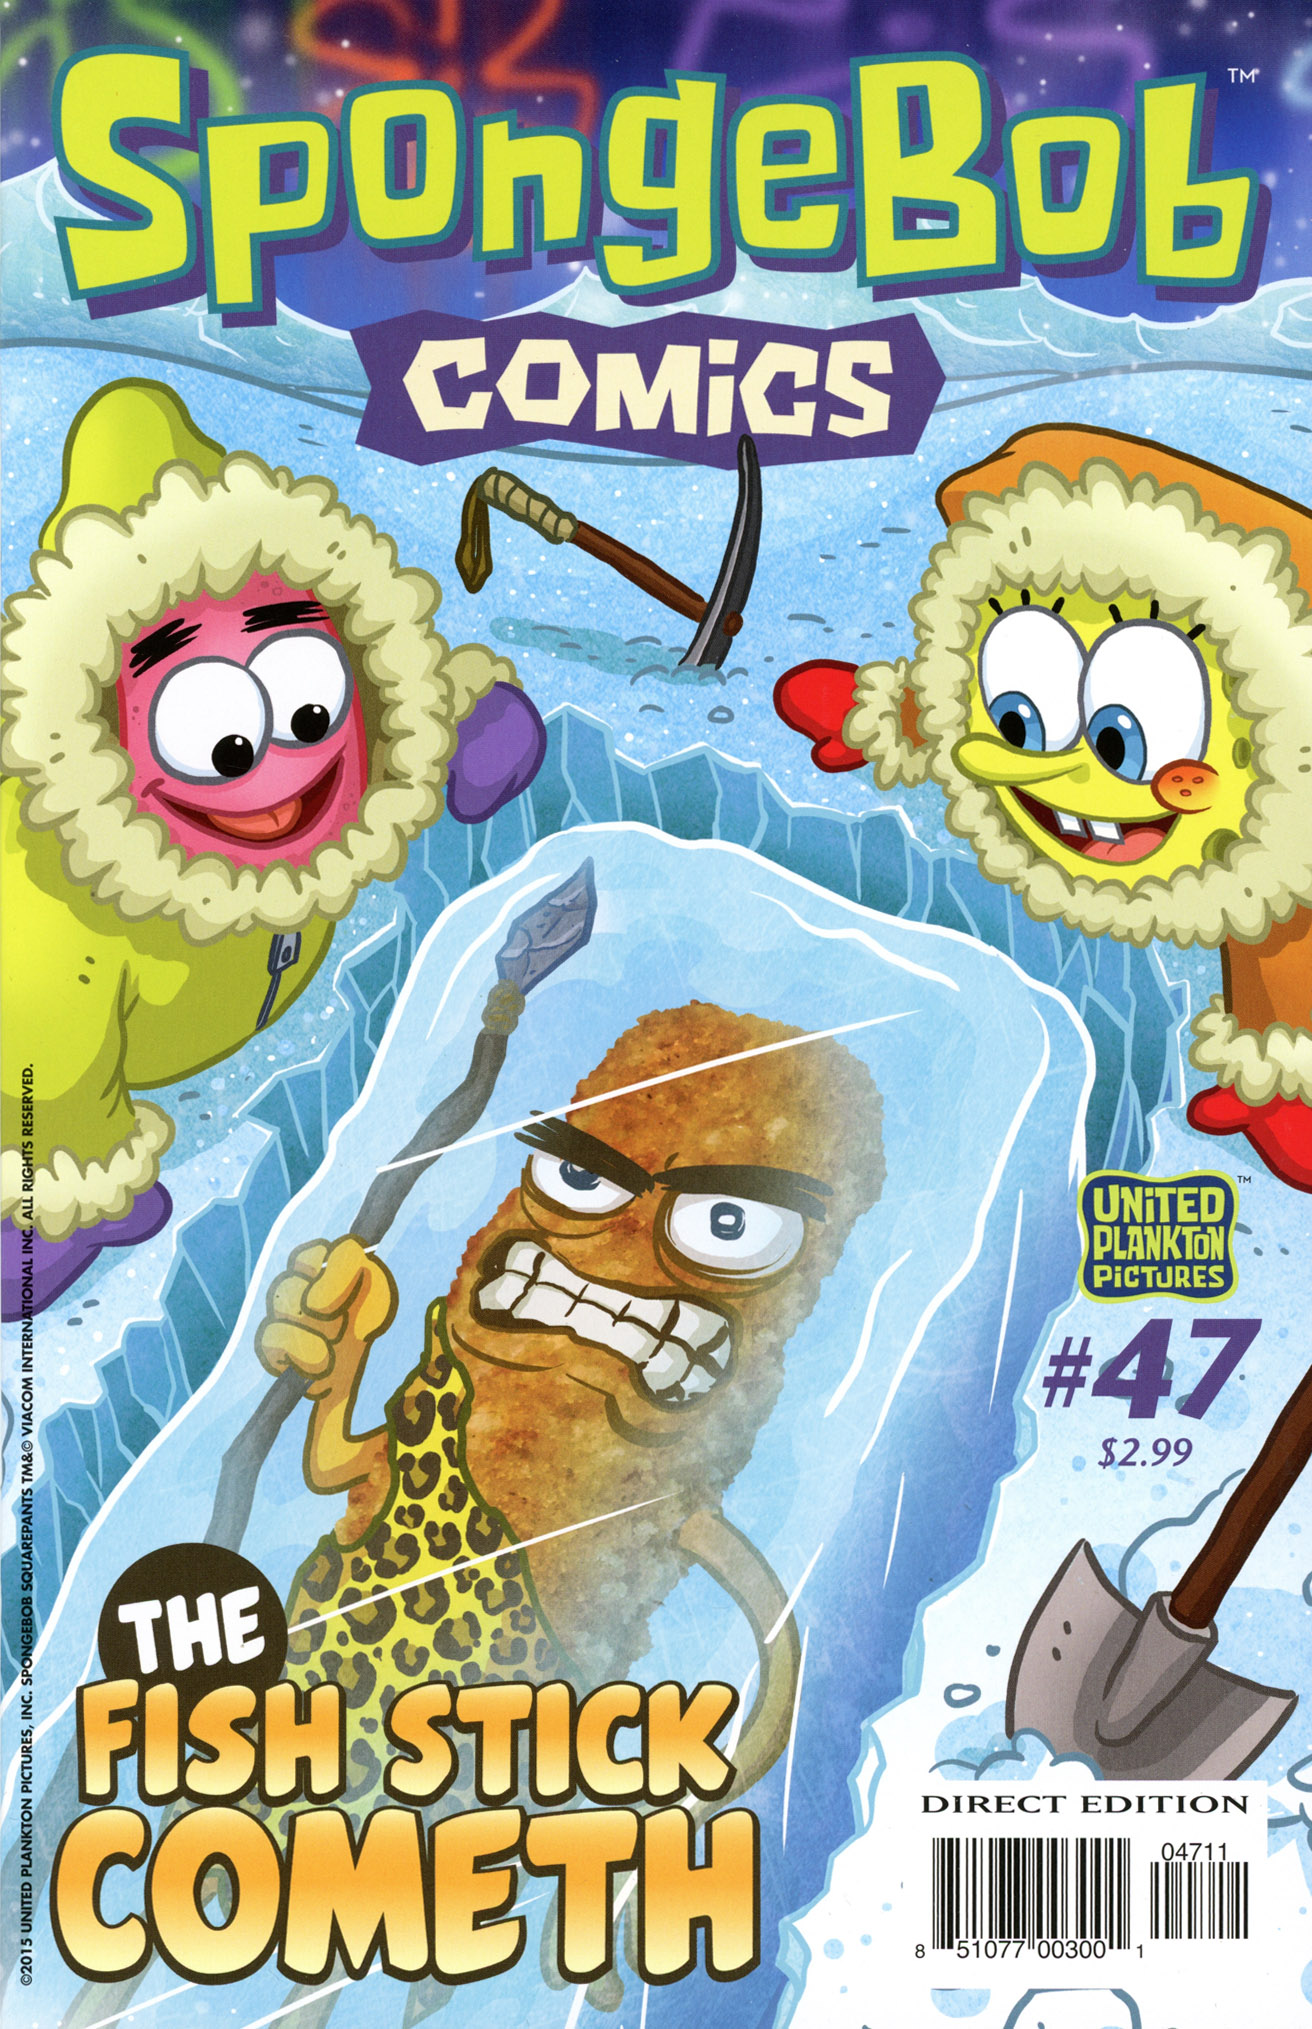 Spongebob Tranny Porn - Spongebob Comics Issue 47 | Read Spongebob Comics Issue 47 comic online in  high quality. Read Full Comic online for free - Read comics online in high  quality .| READ COMIC ONLINE